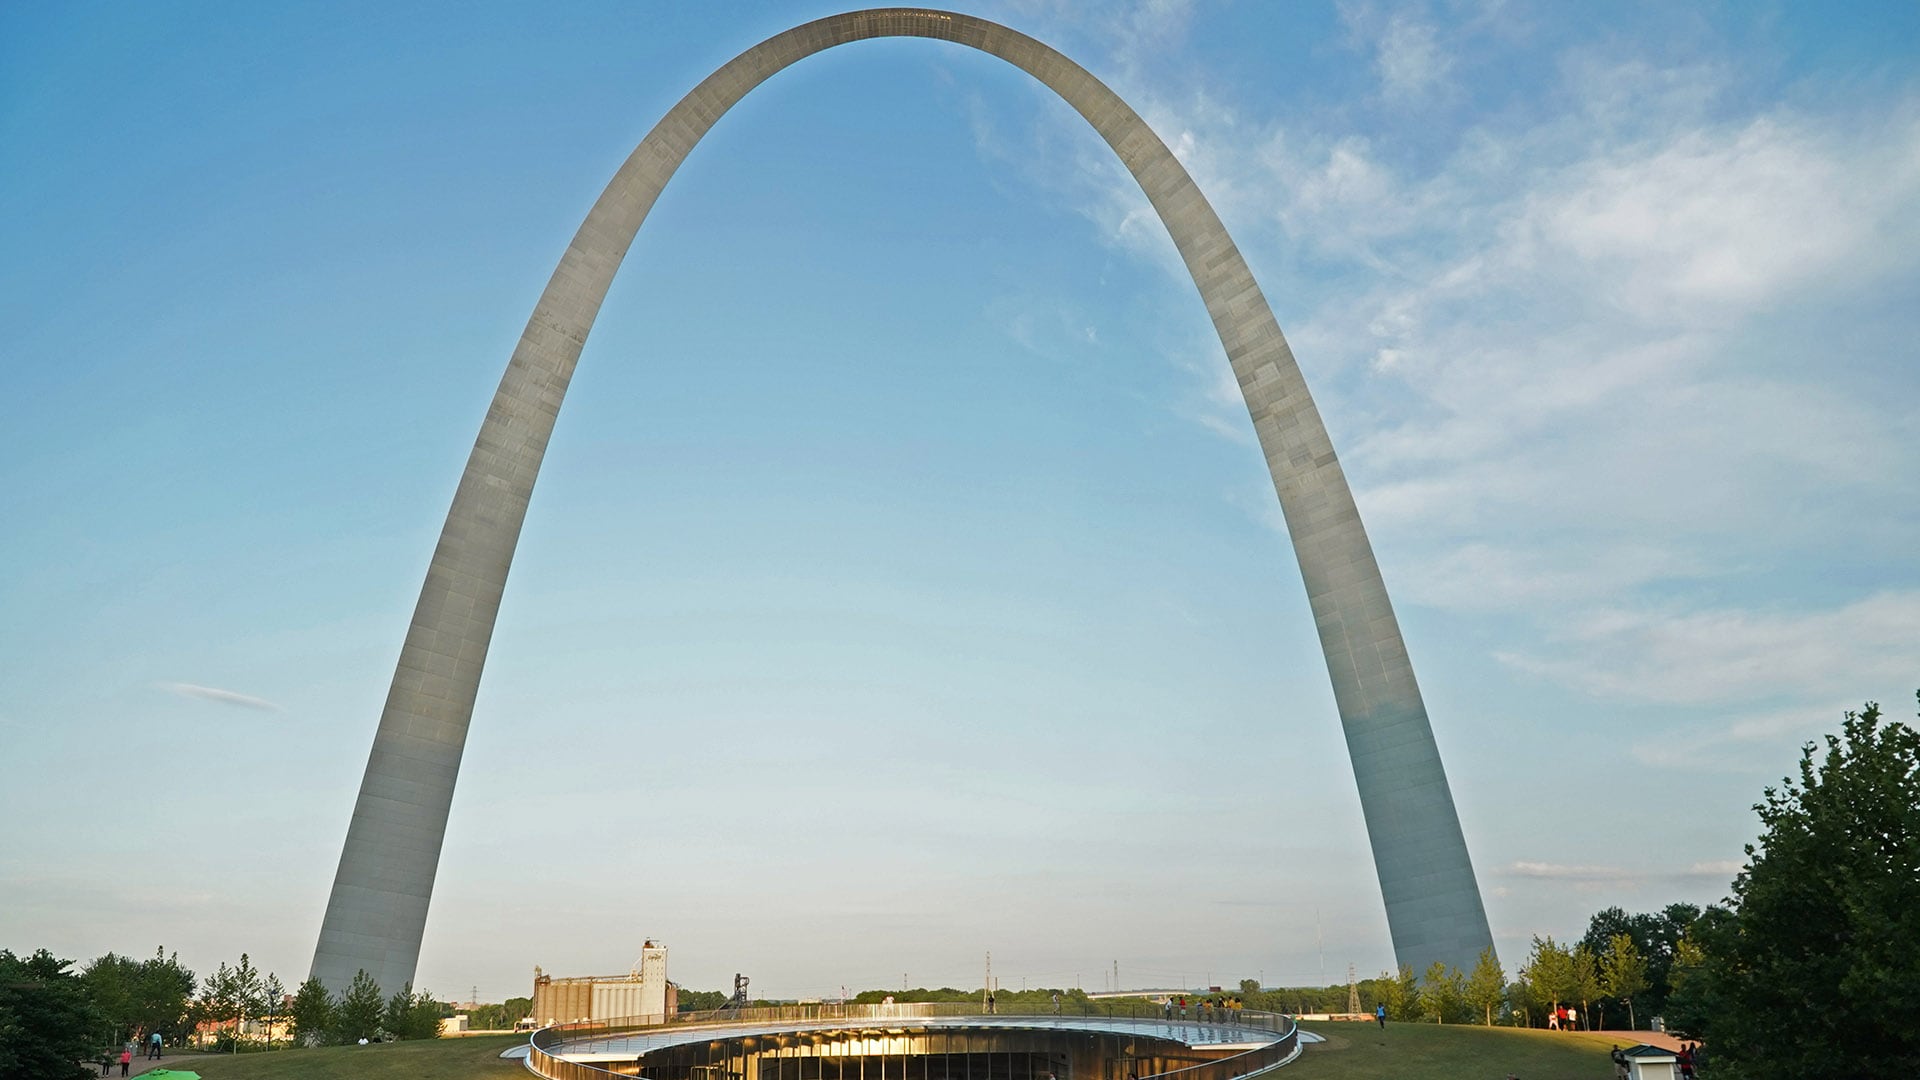 L’architecte Eero Saarinen a créé l’Arche dans le cadre d’un concours national pour la conception d’un monument pour la ville de St. Louis en 1947.